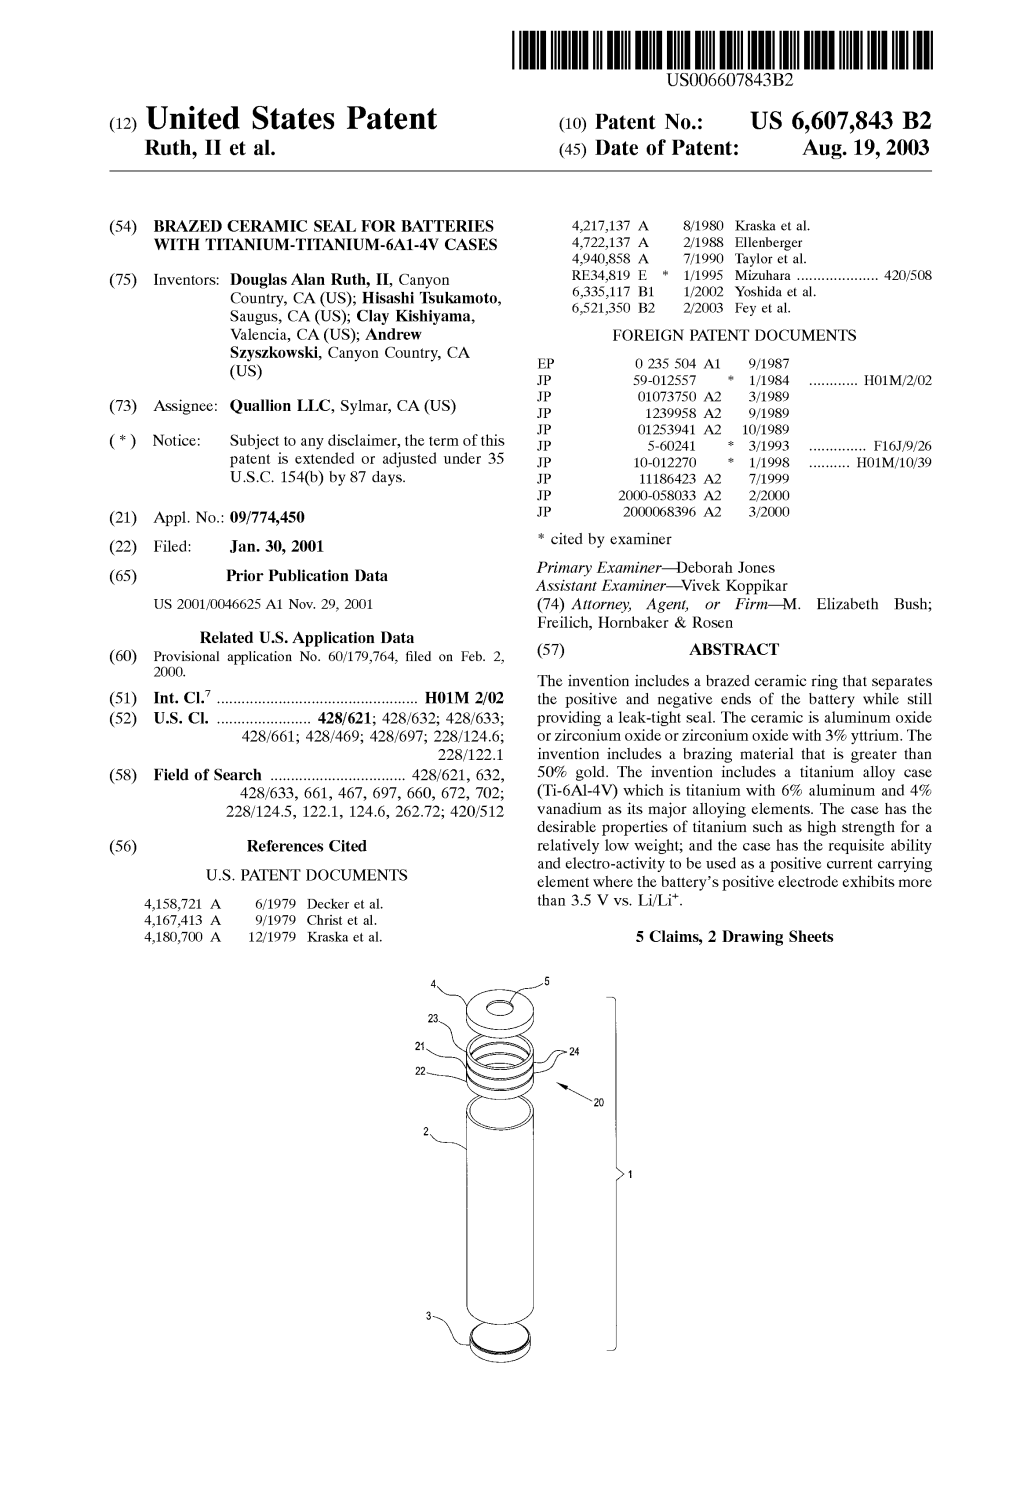 United States Patent (10) Patent N0.: US 6,607,843 B2 Ruth, 11 Et Al